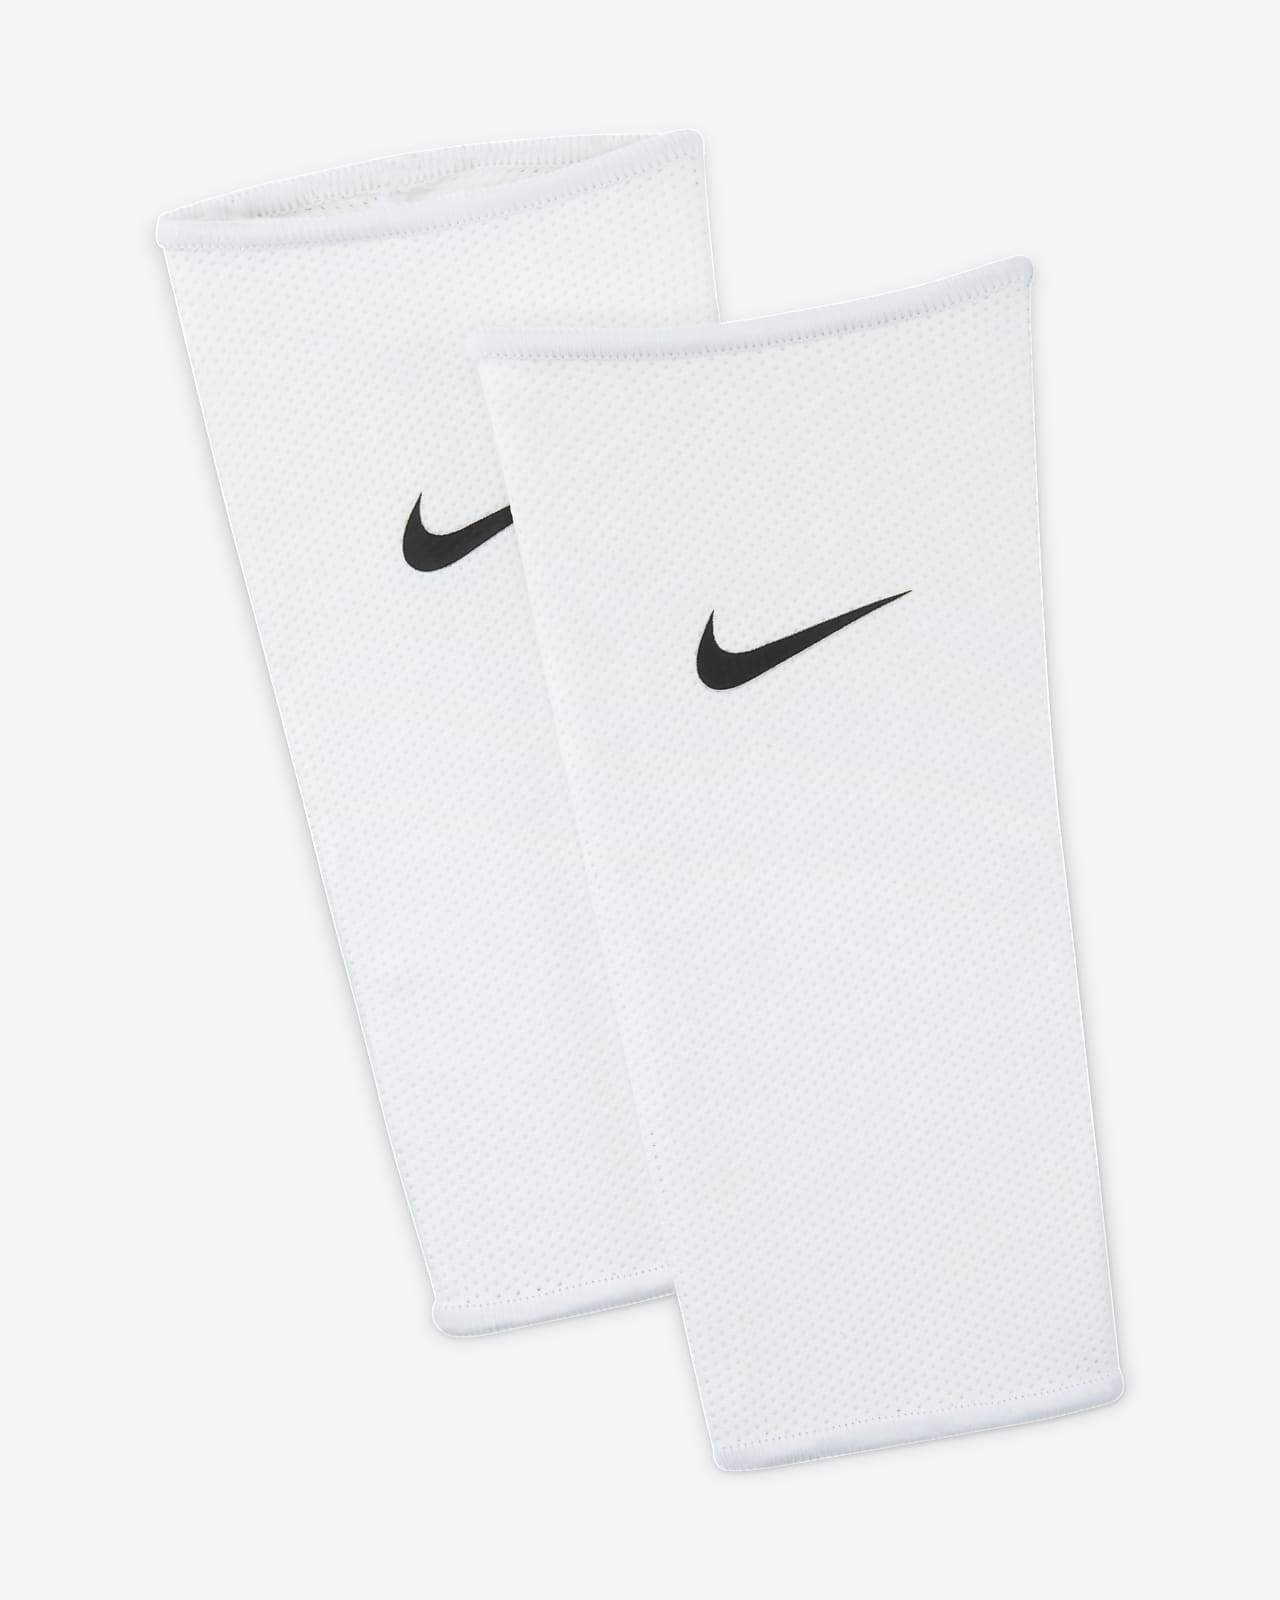 Ochronne rękawy piłkarskie Nike Guard Lock (1 para)